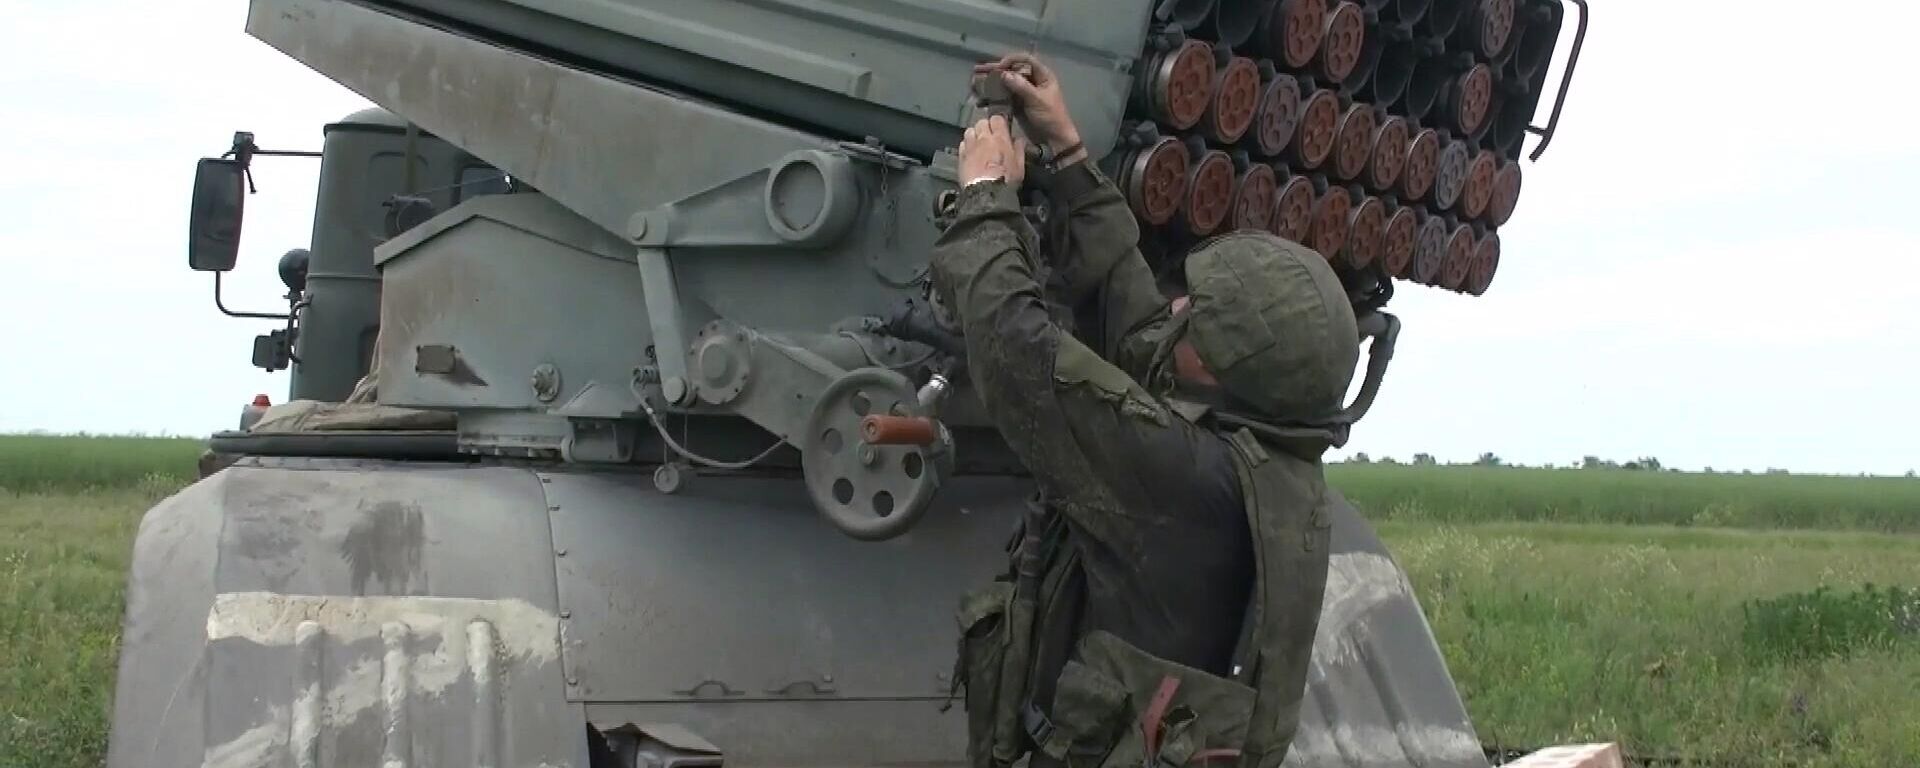 Militar prepara disparo com lançador múltiplo de foguetes Grad durante operação militar especial da Rússia na Ucrânia - Sputnik Brasil, 1920, 23.07.2022